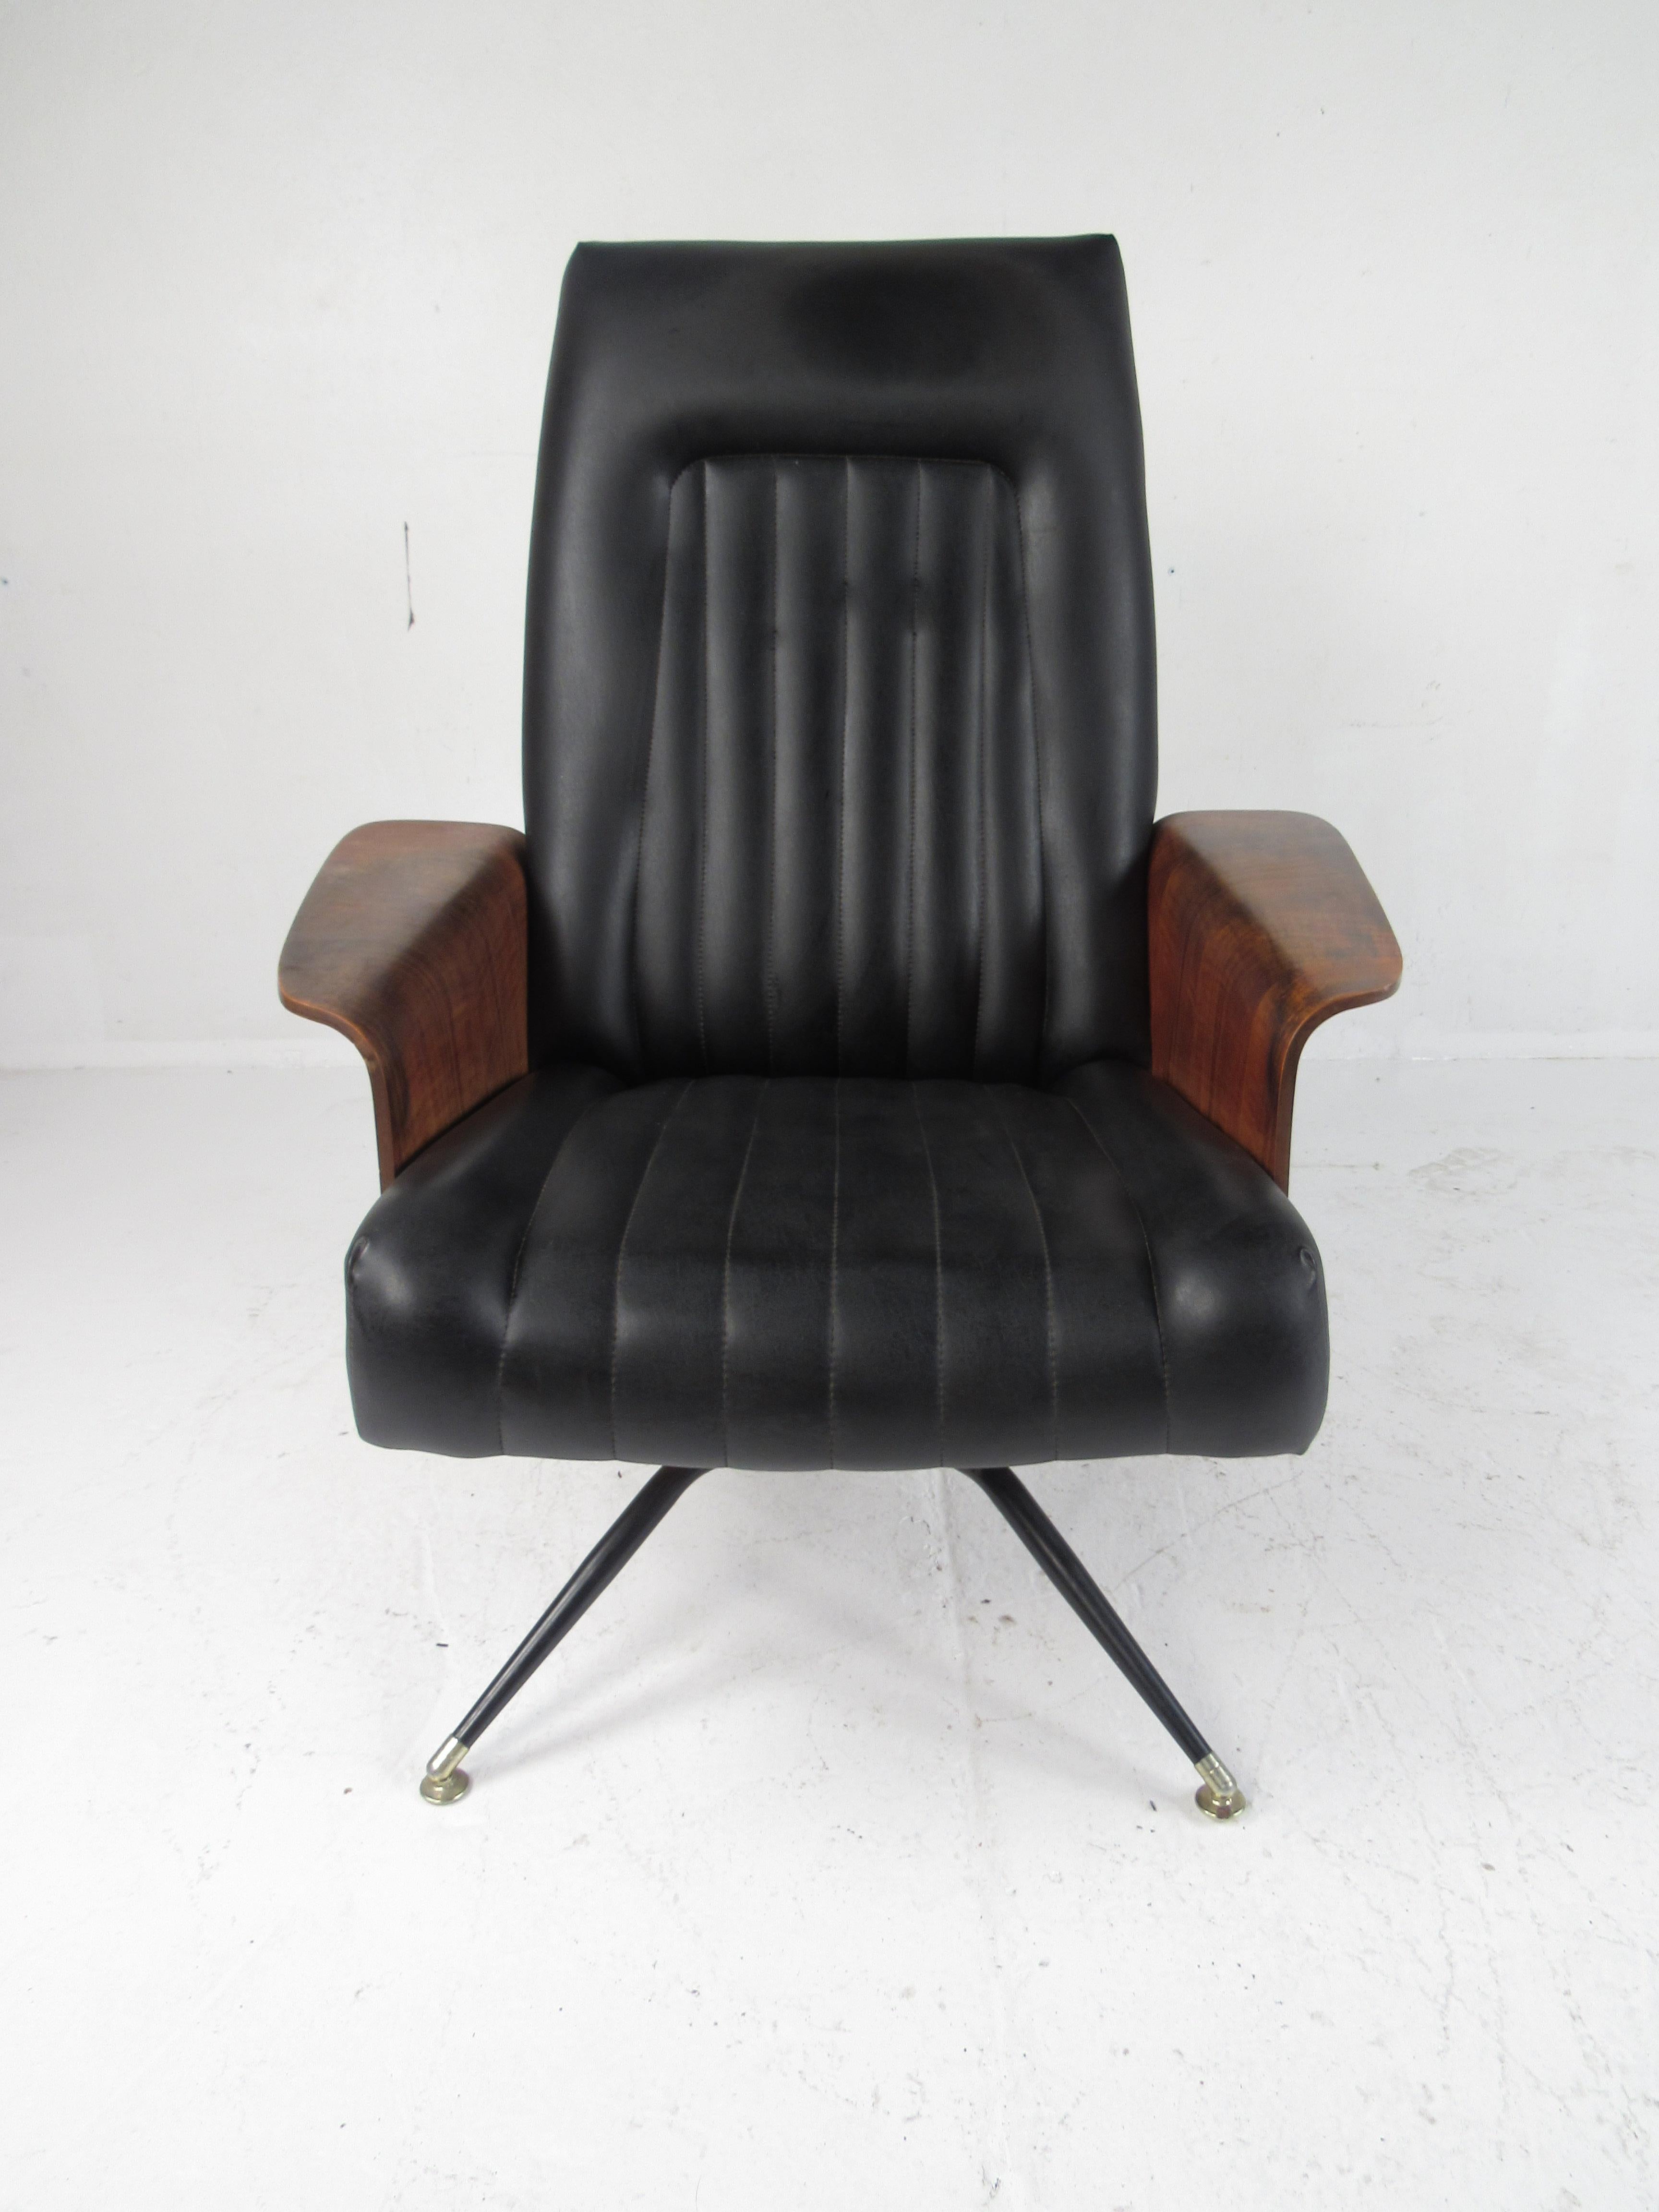 Ein atemberaubender Sessel aus den 1960er Jahren von Murphy Miller. Dieser leicht gebrauchte Drehsessel verfügt über geflügelte Armlehnen aus Nussbaumholz und eine Vinylpolsterung. Ein Vintage-Schmuckstück mit einem ungewöhnlichen drehbaren